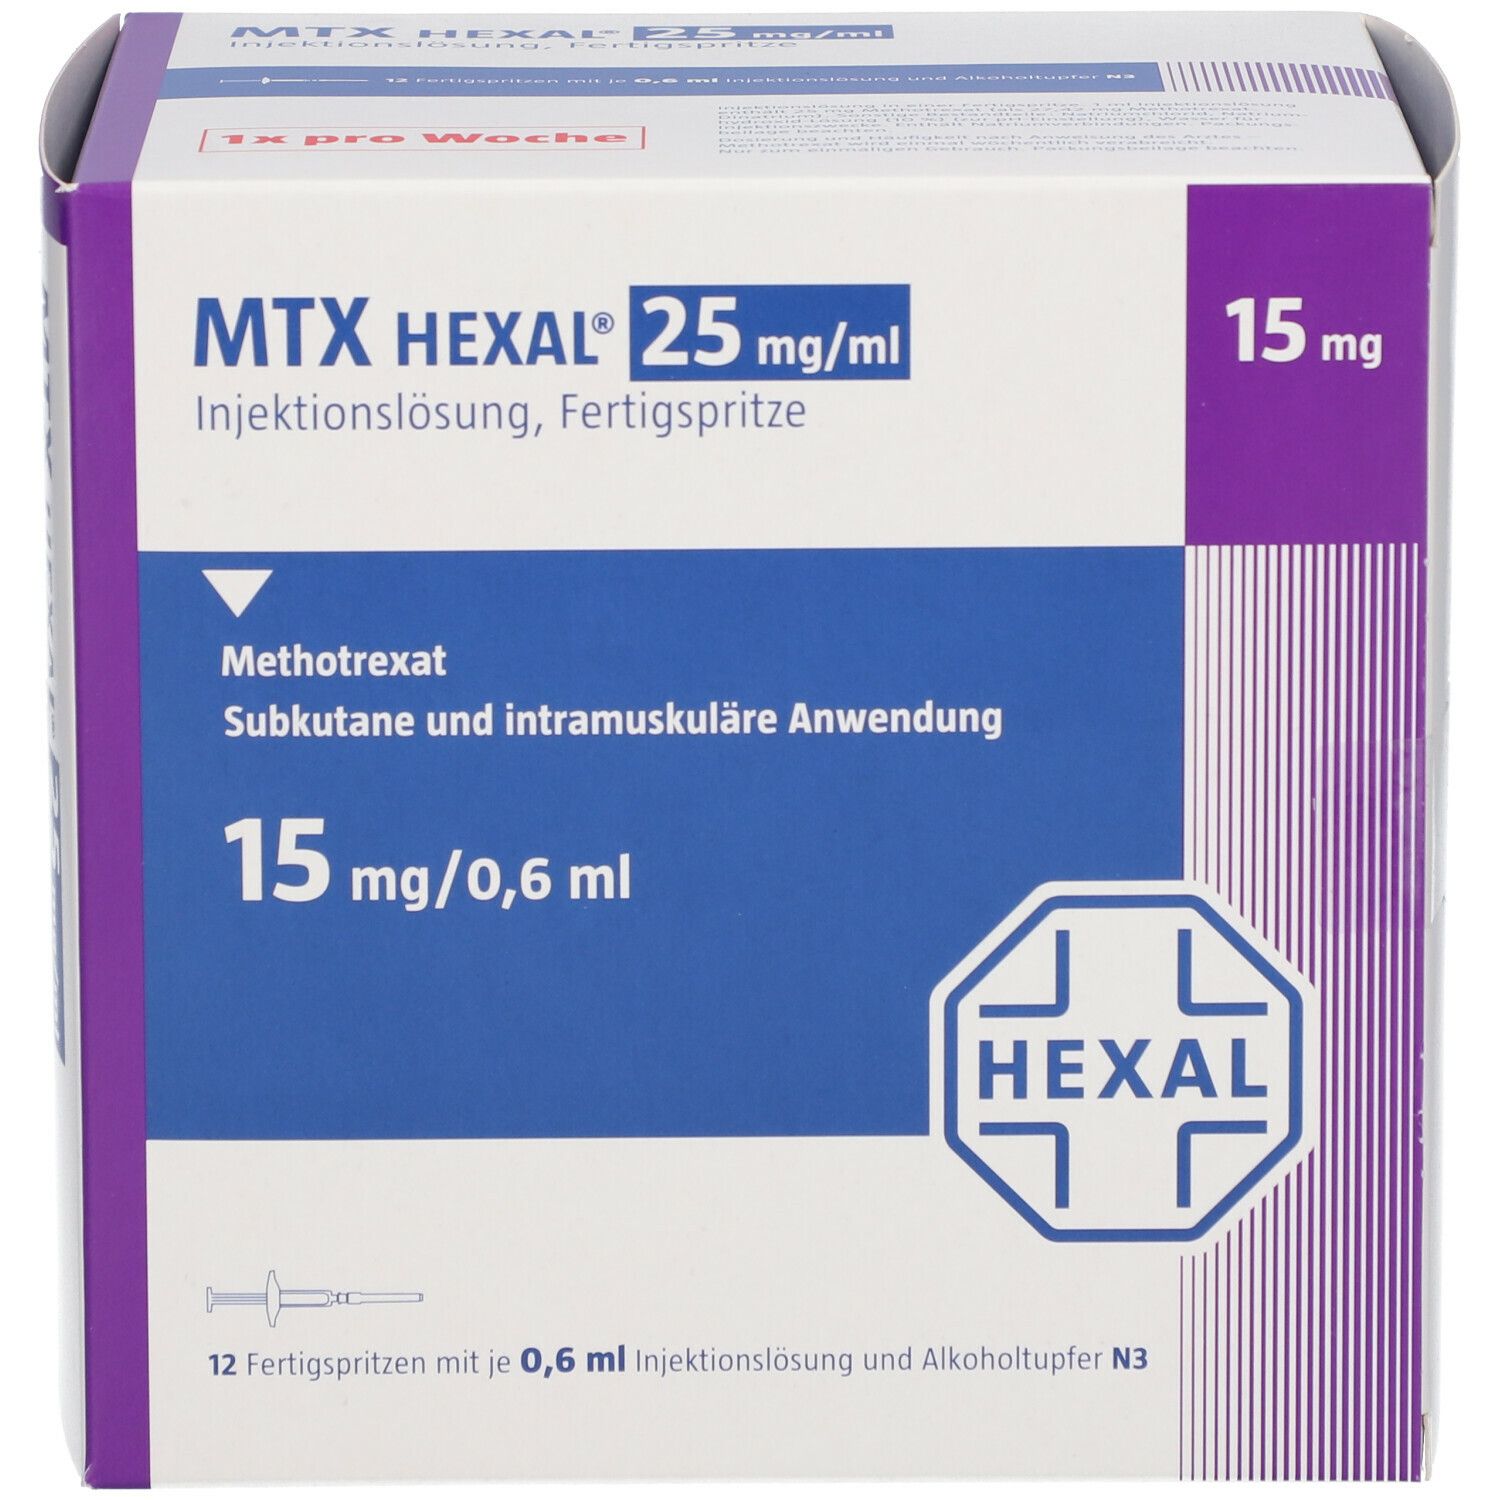 MTX HEXAL® 25 mg/ml 15 mg